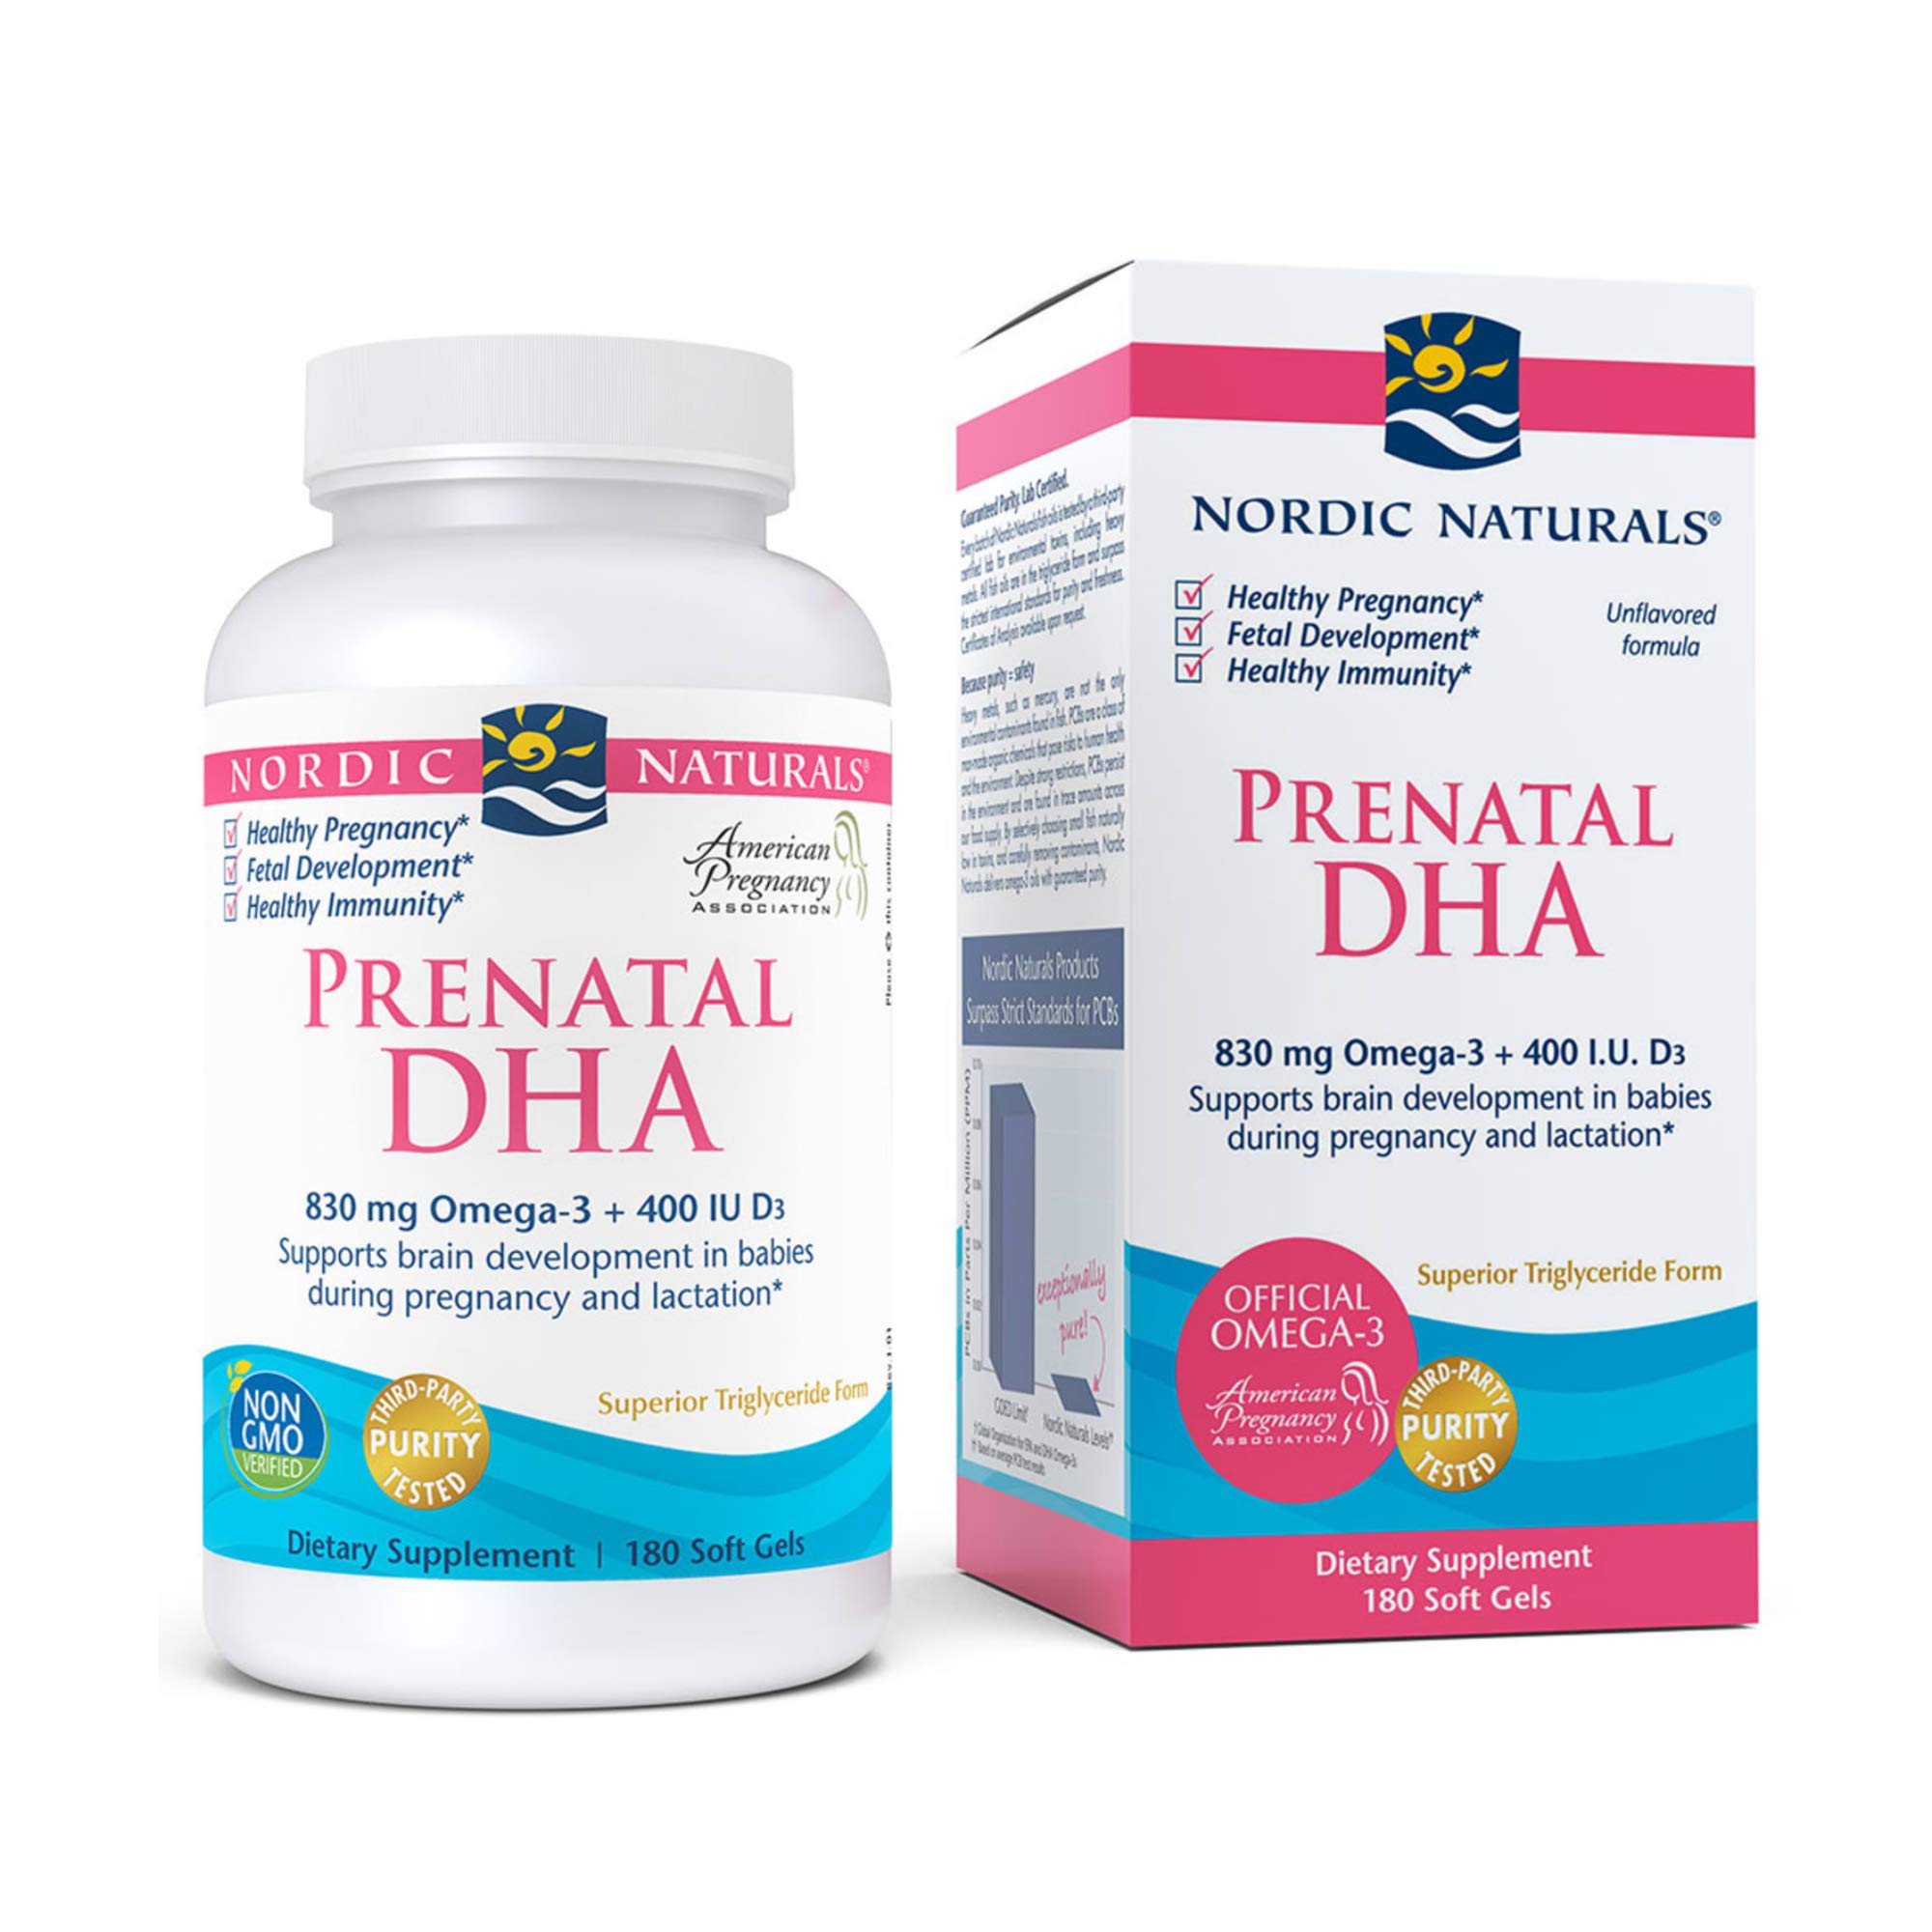 Nordic Naturals Prenatal DHA 180 viên - Giúp phát triển trí não, thị lục cho trẻ so sinh.